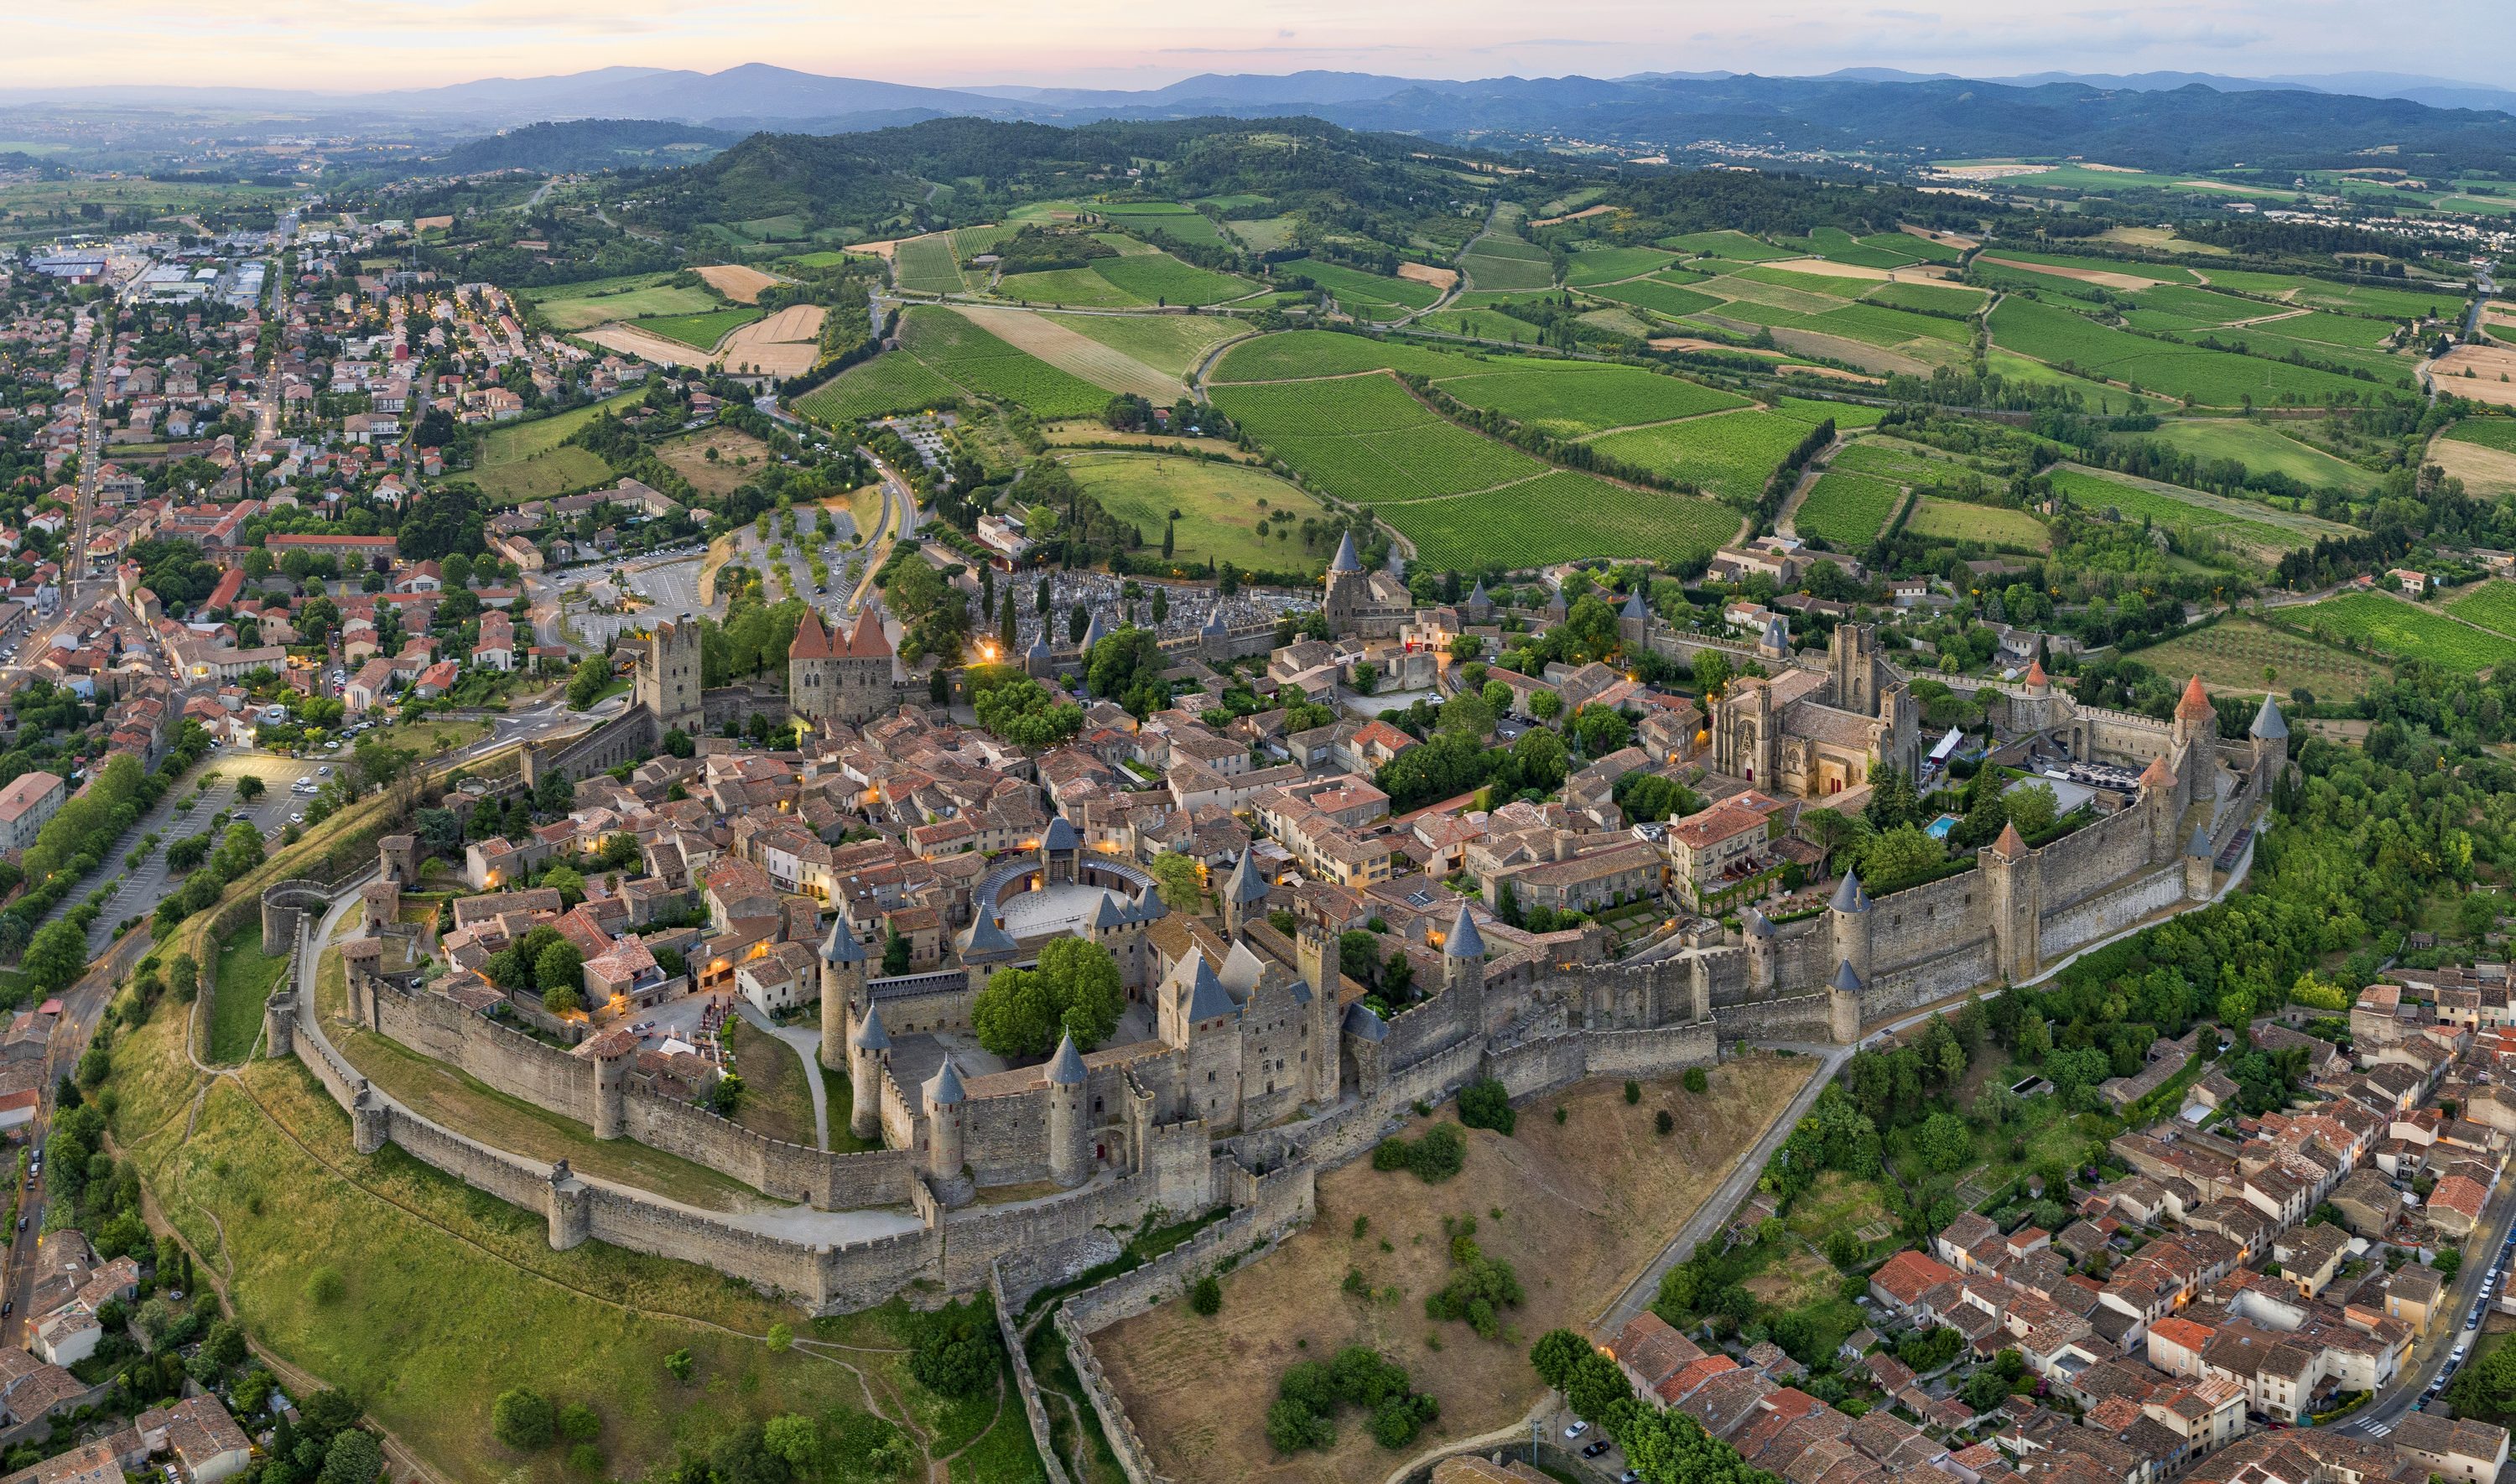 Vacances dans le sud de la France : 5 endroits à visiter autour de Carcassonne